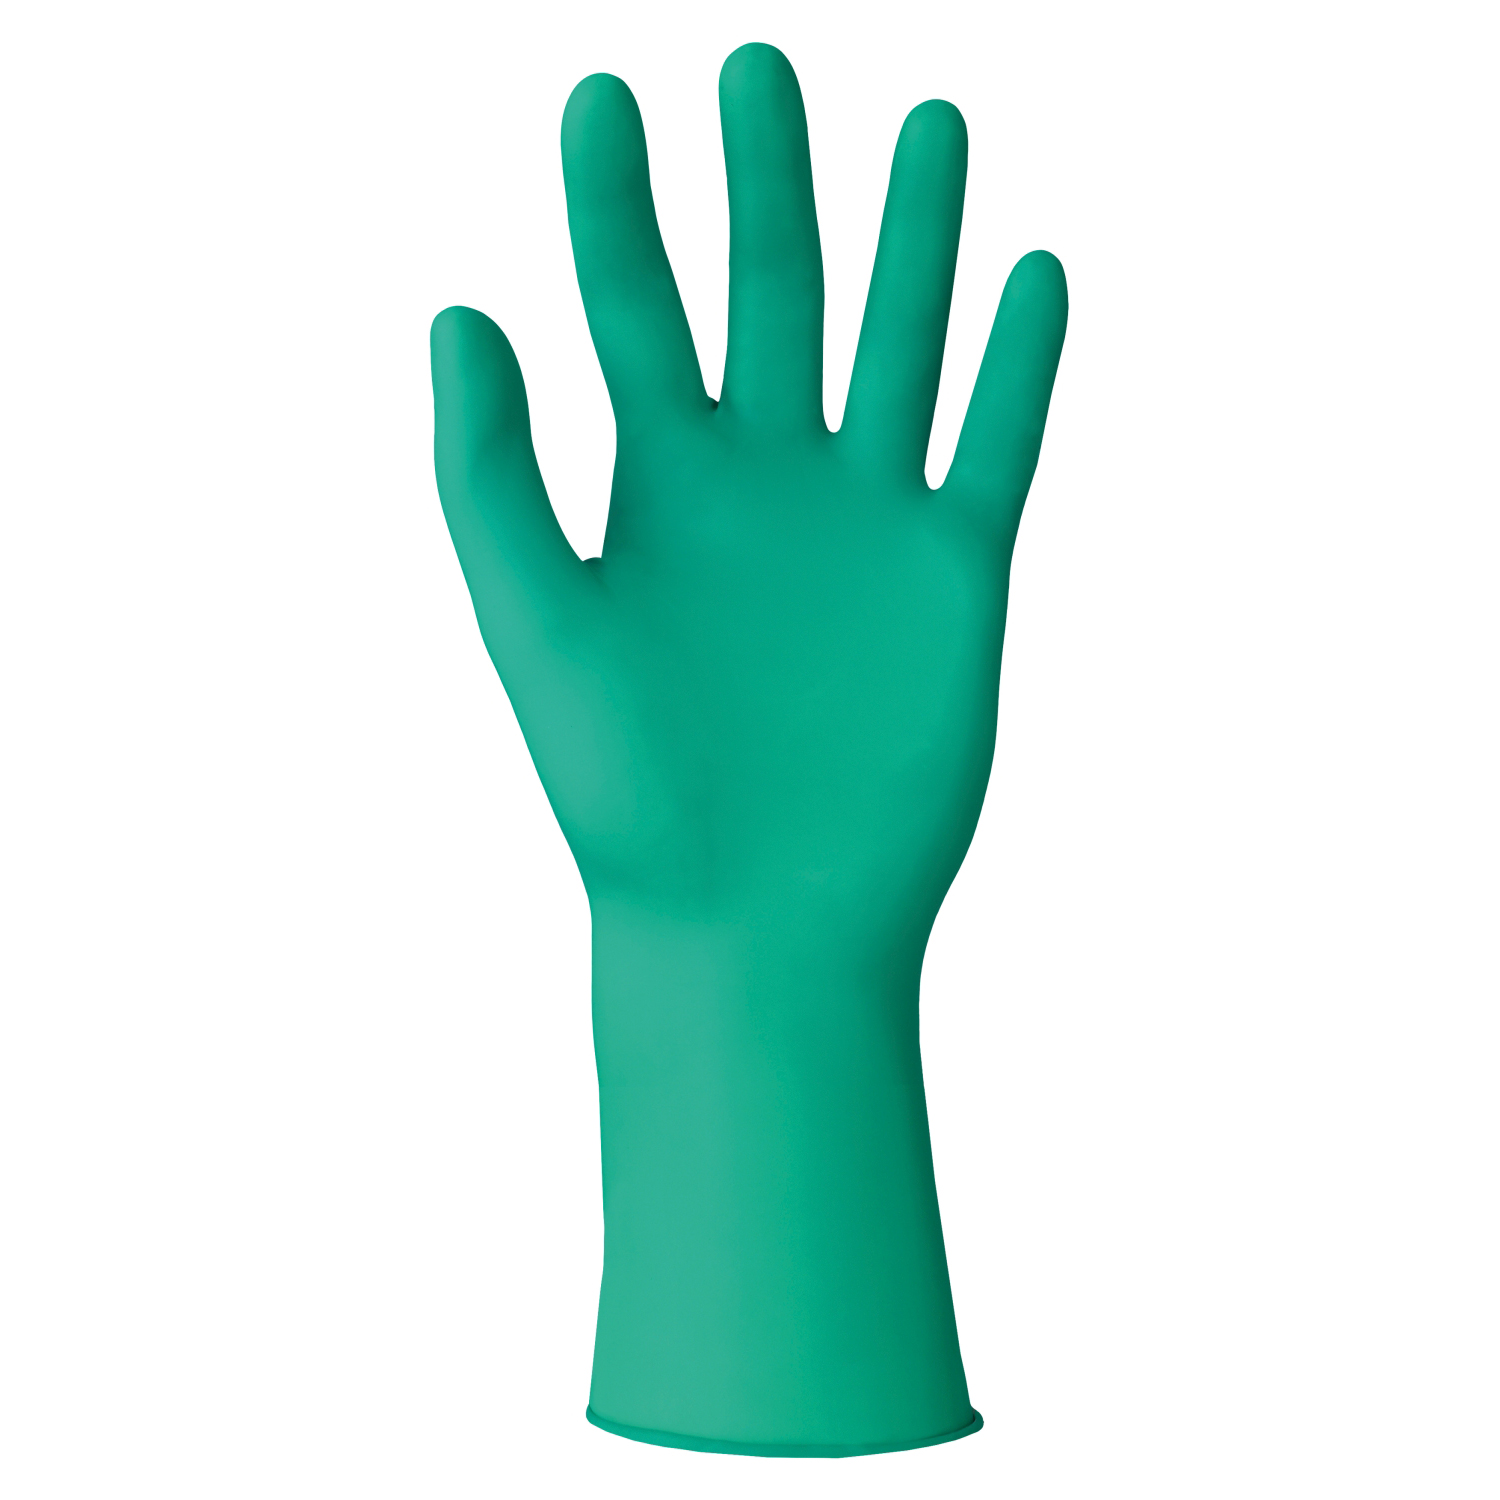 Polychloropren-Handschuh DermaShield 73-721